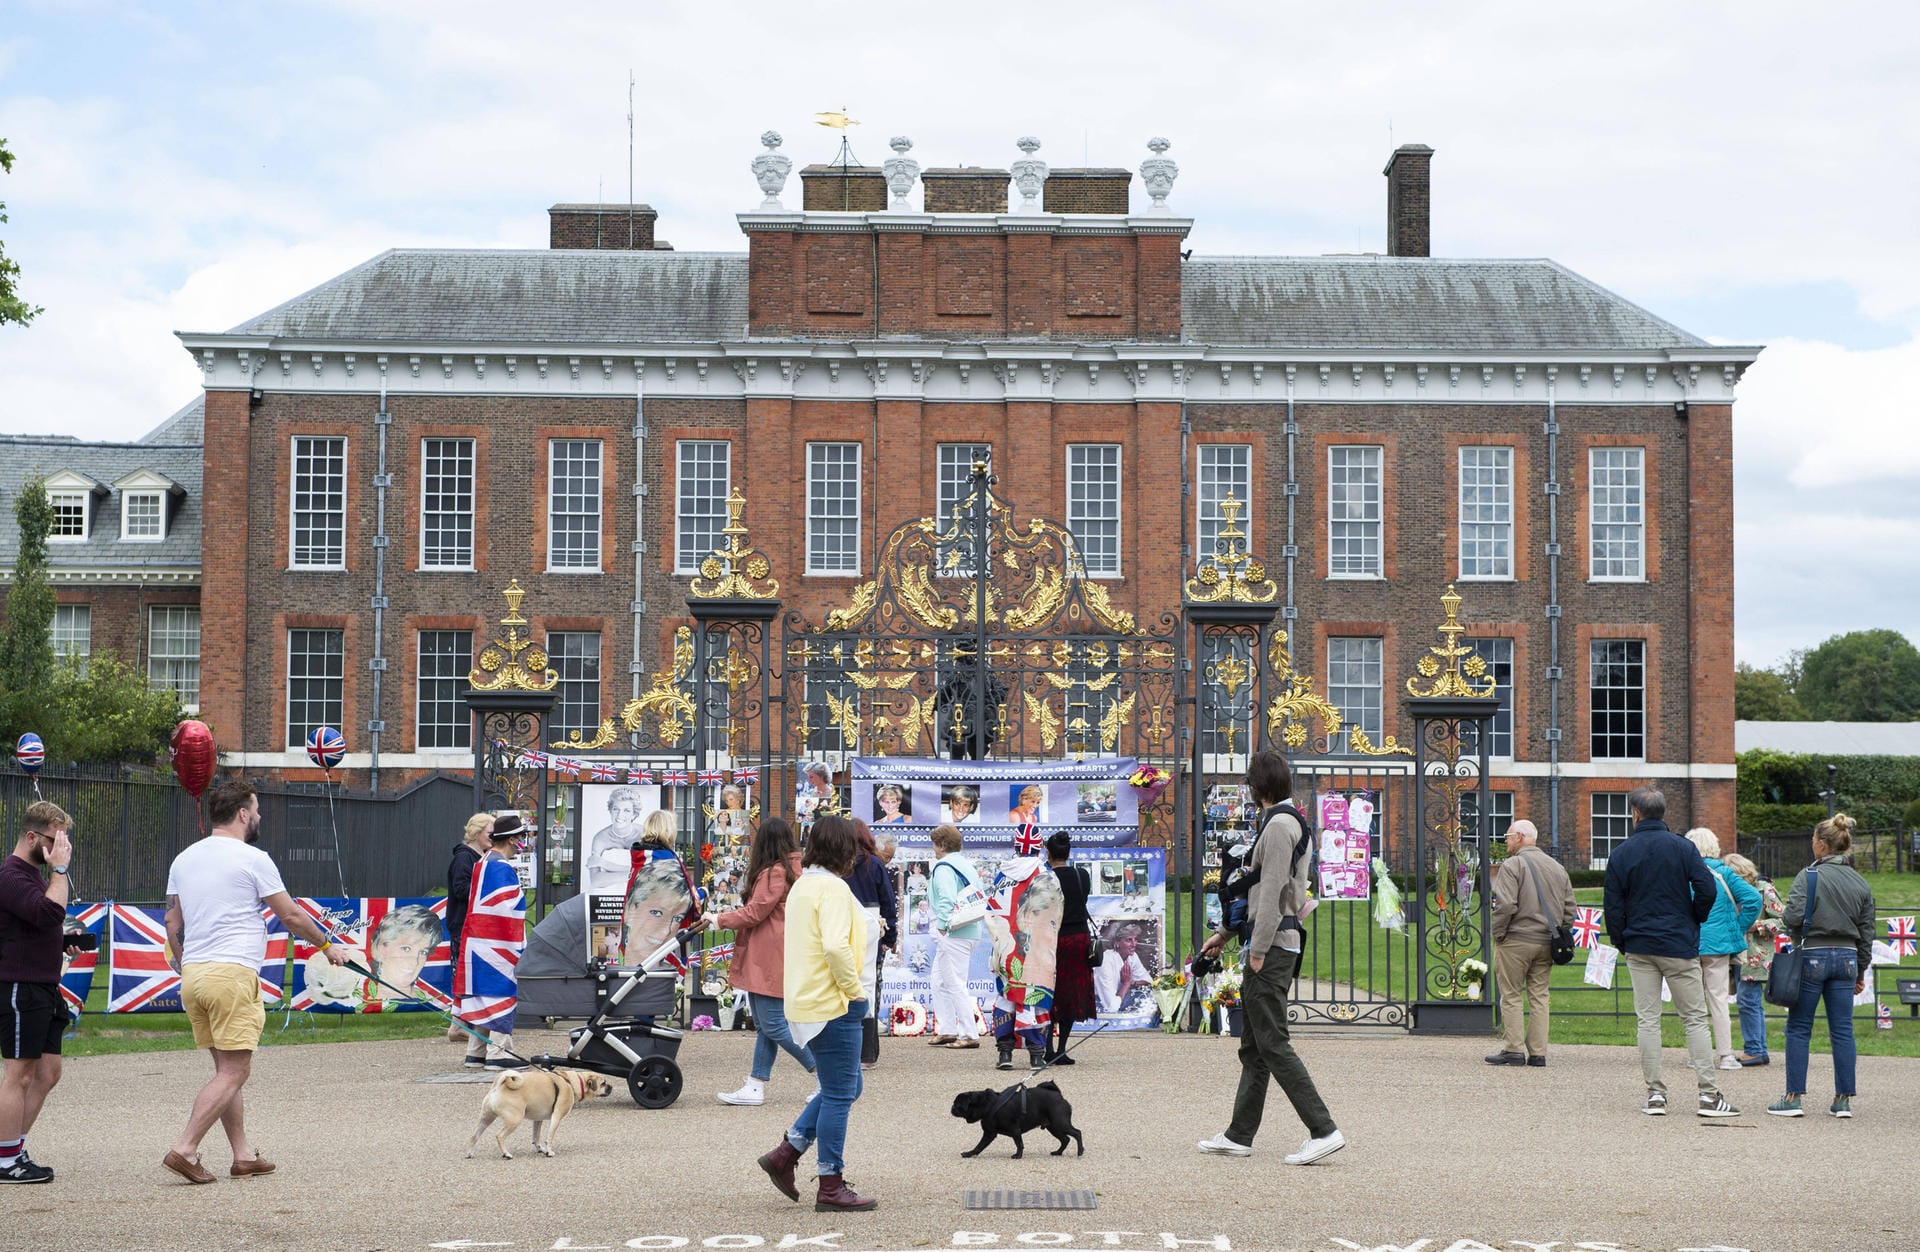 Kensington-Palast: In diesem Schloss haben Prinz William und Herzogin Kate mit ihren drei Kindern George, Charlotte und Louis ein ein offizielles Zuhause gefunden. Von 1981 bis 1997 residierte dort Williams Mutter Diana. Heute leben in dem riesigen Bau auch weitere Mitglieder der Königsfamilie. (Besitz der Krone)